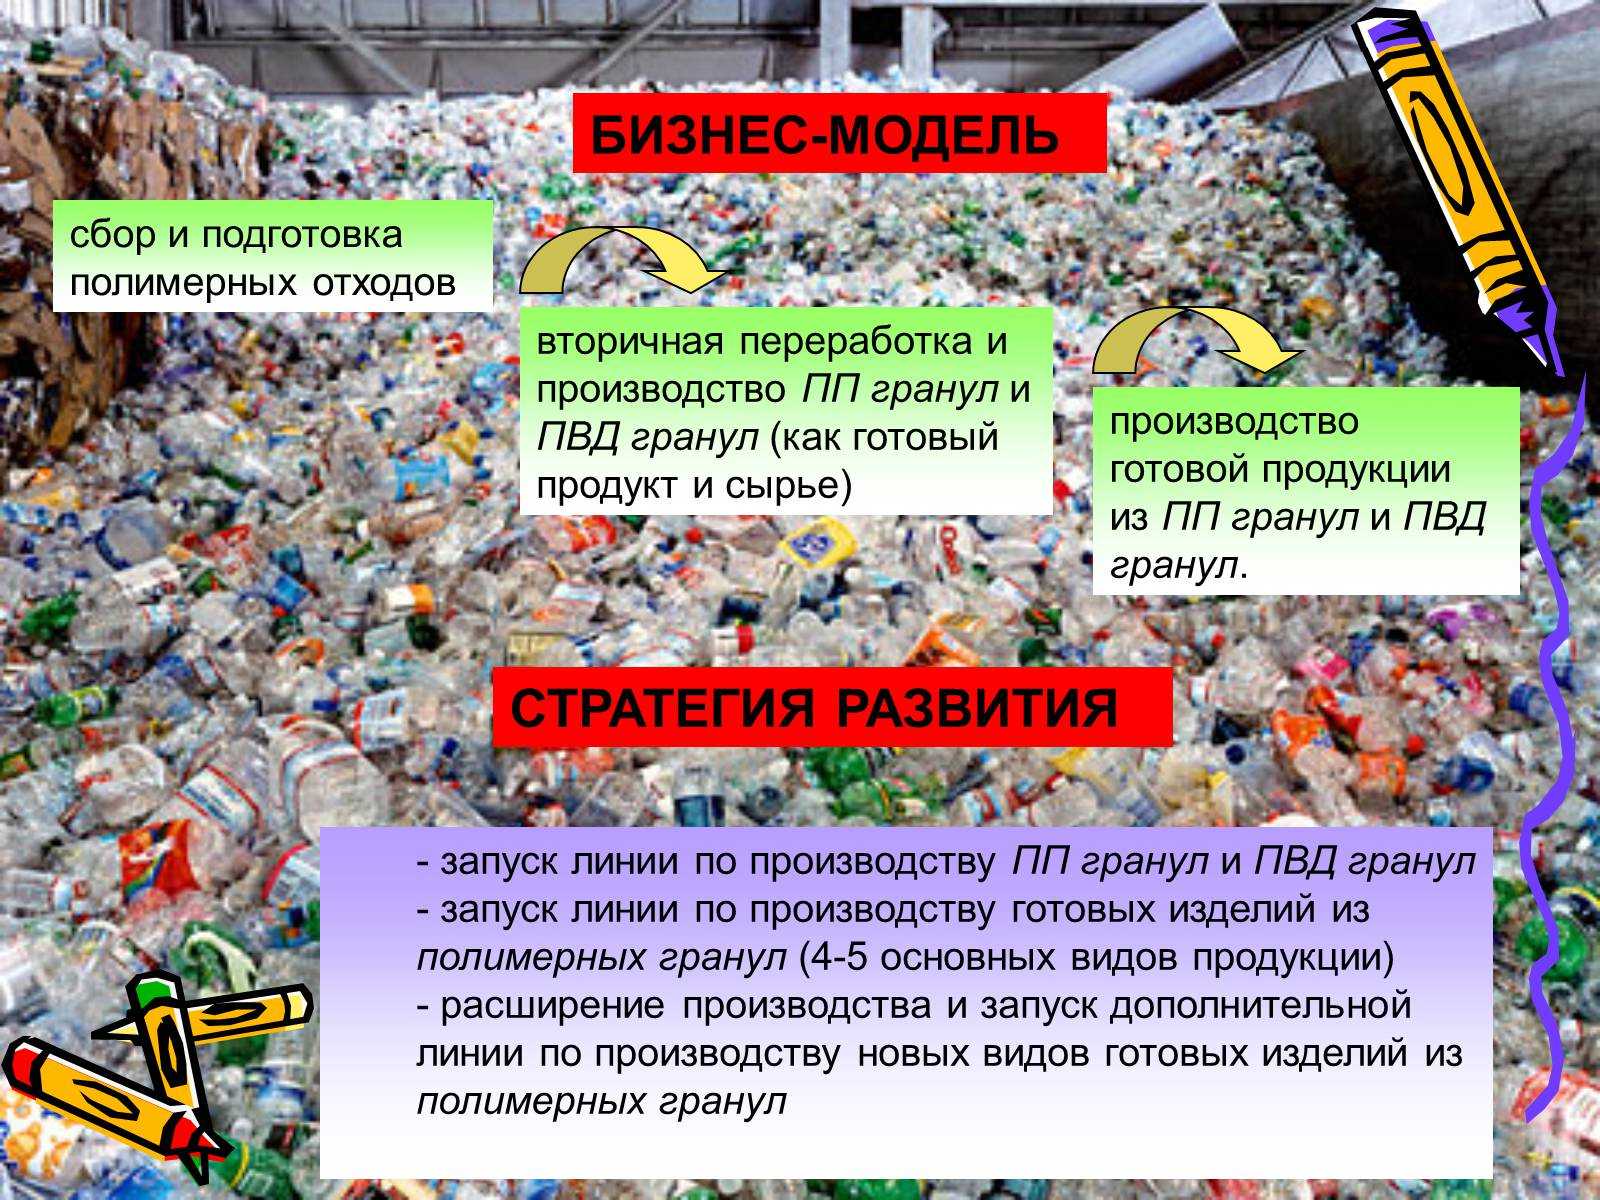 Бизнес на вторичном сырье, его реализация и использование, виды отходов